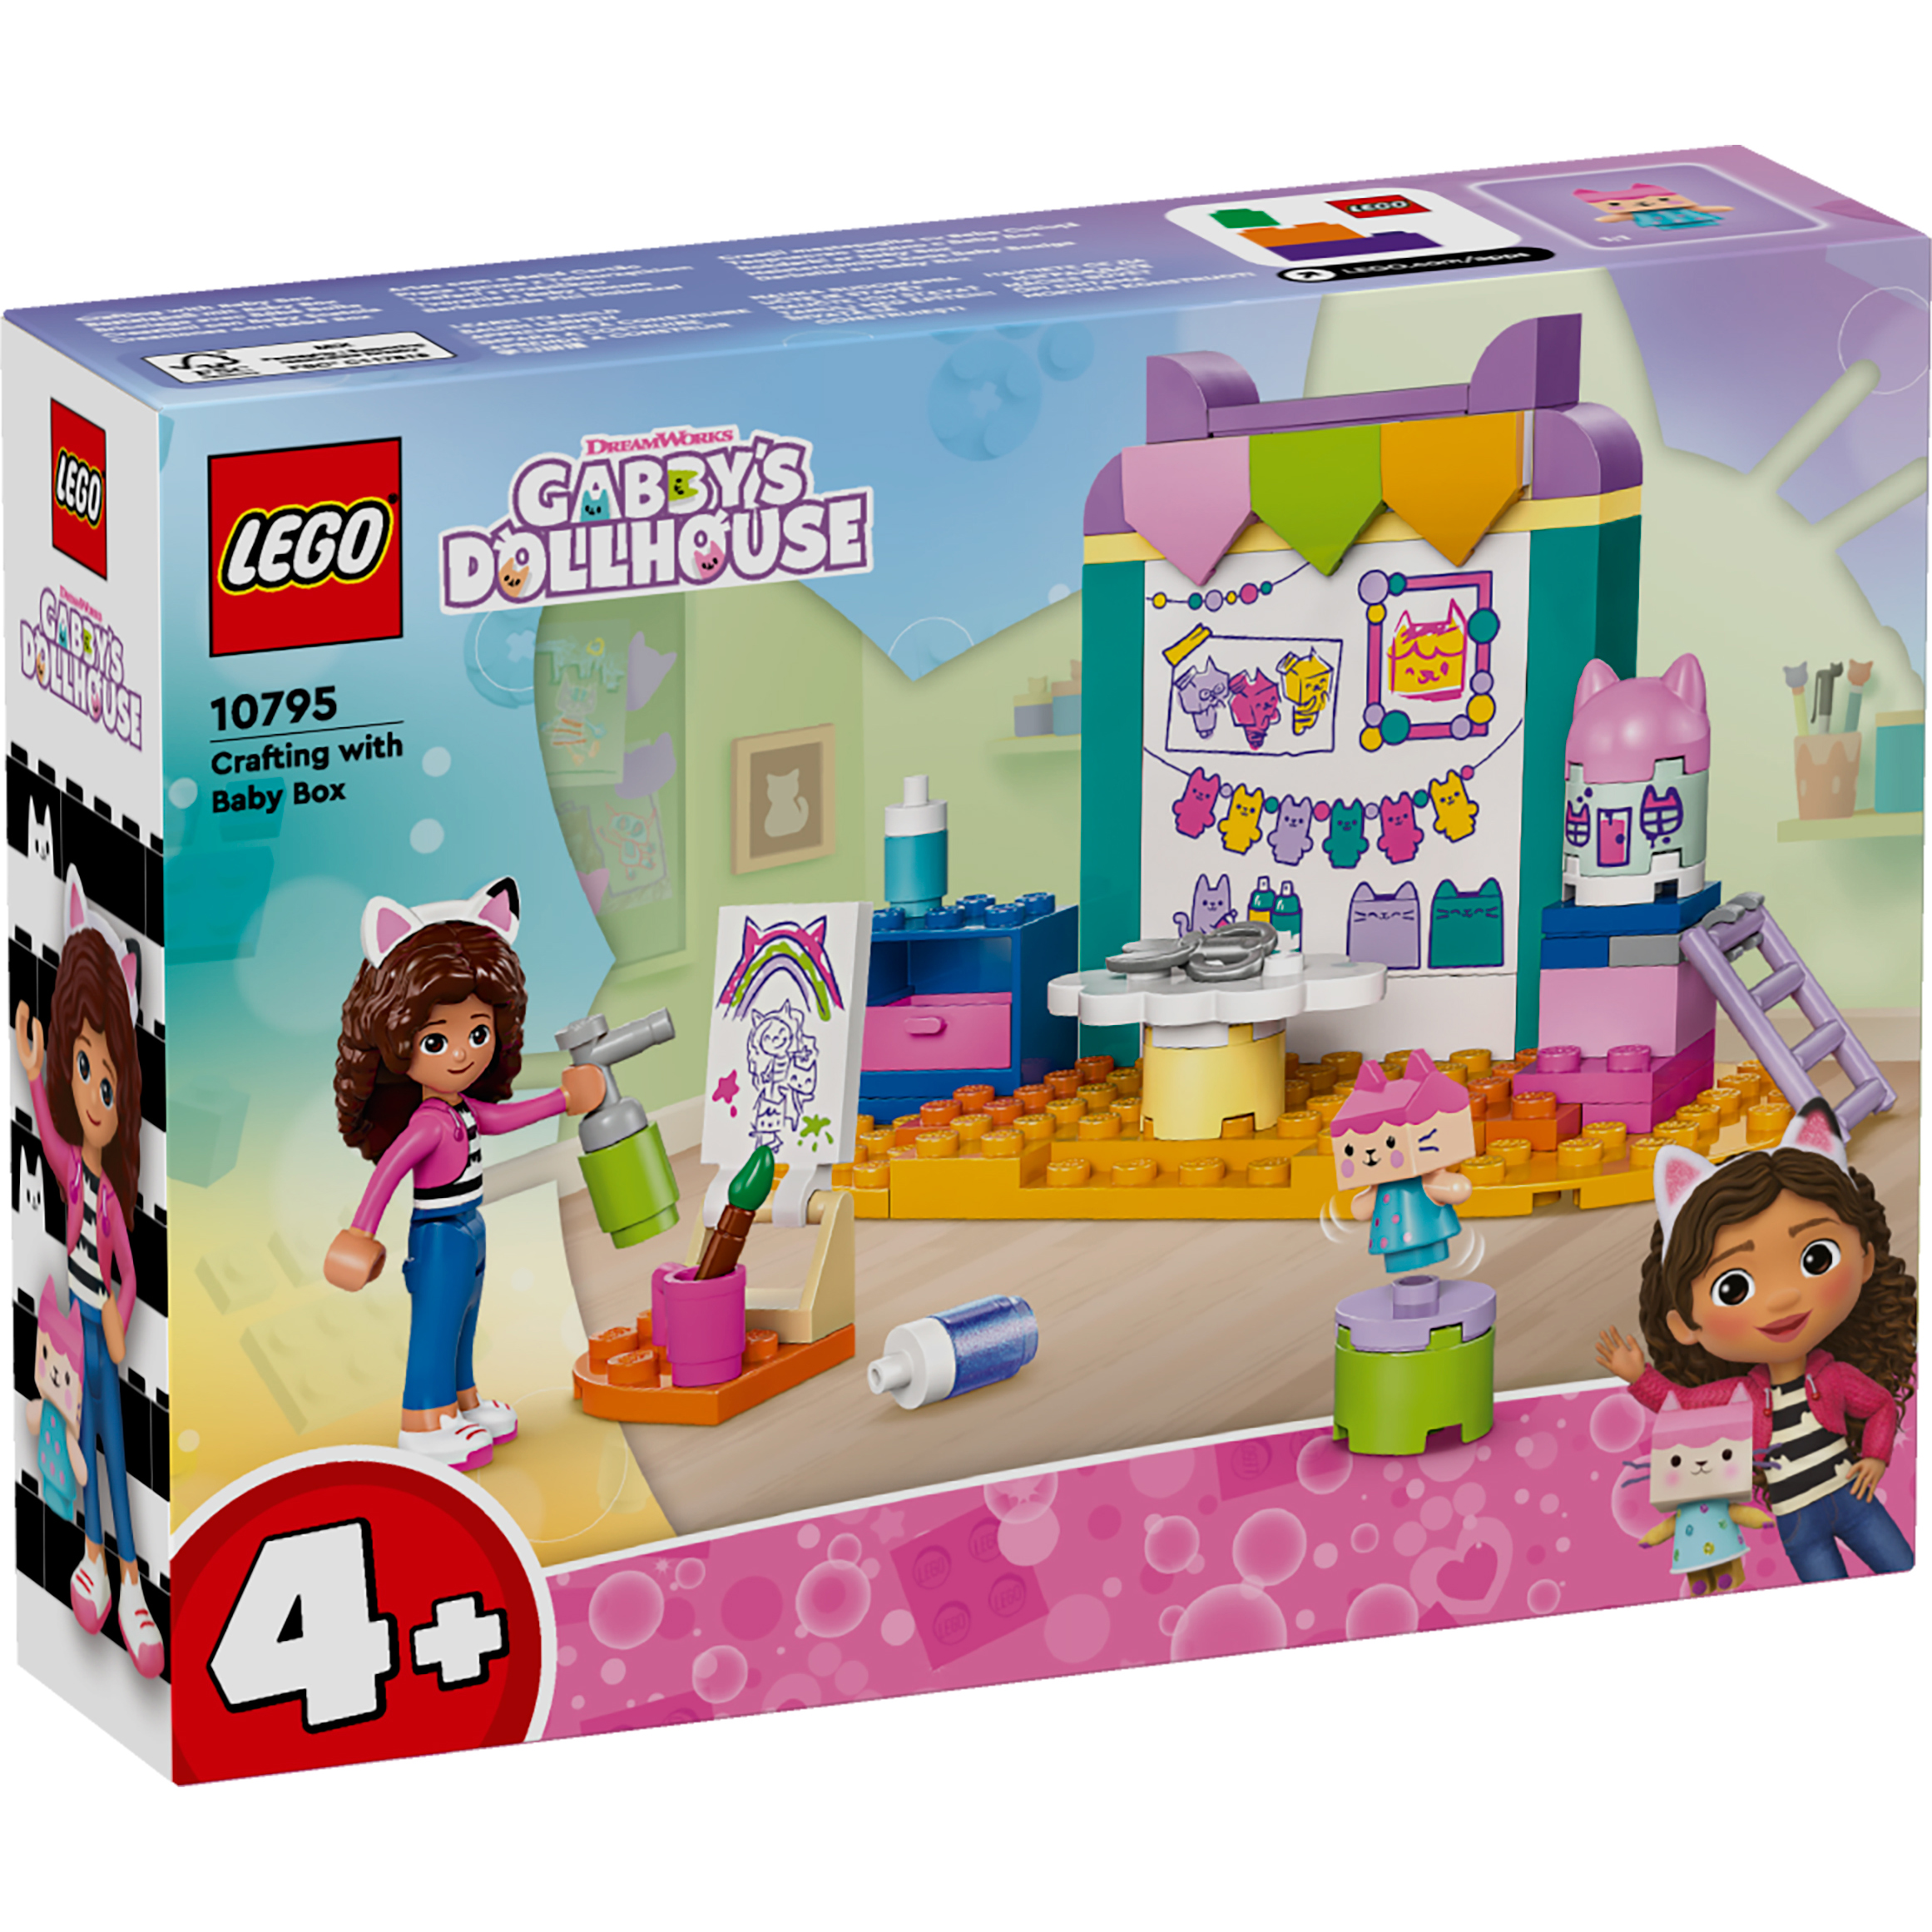 Констуктор LEGO Gabby's Dollhouse Робимо разом з Доцей-Бокс 10795фото1